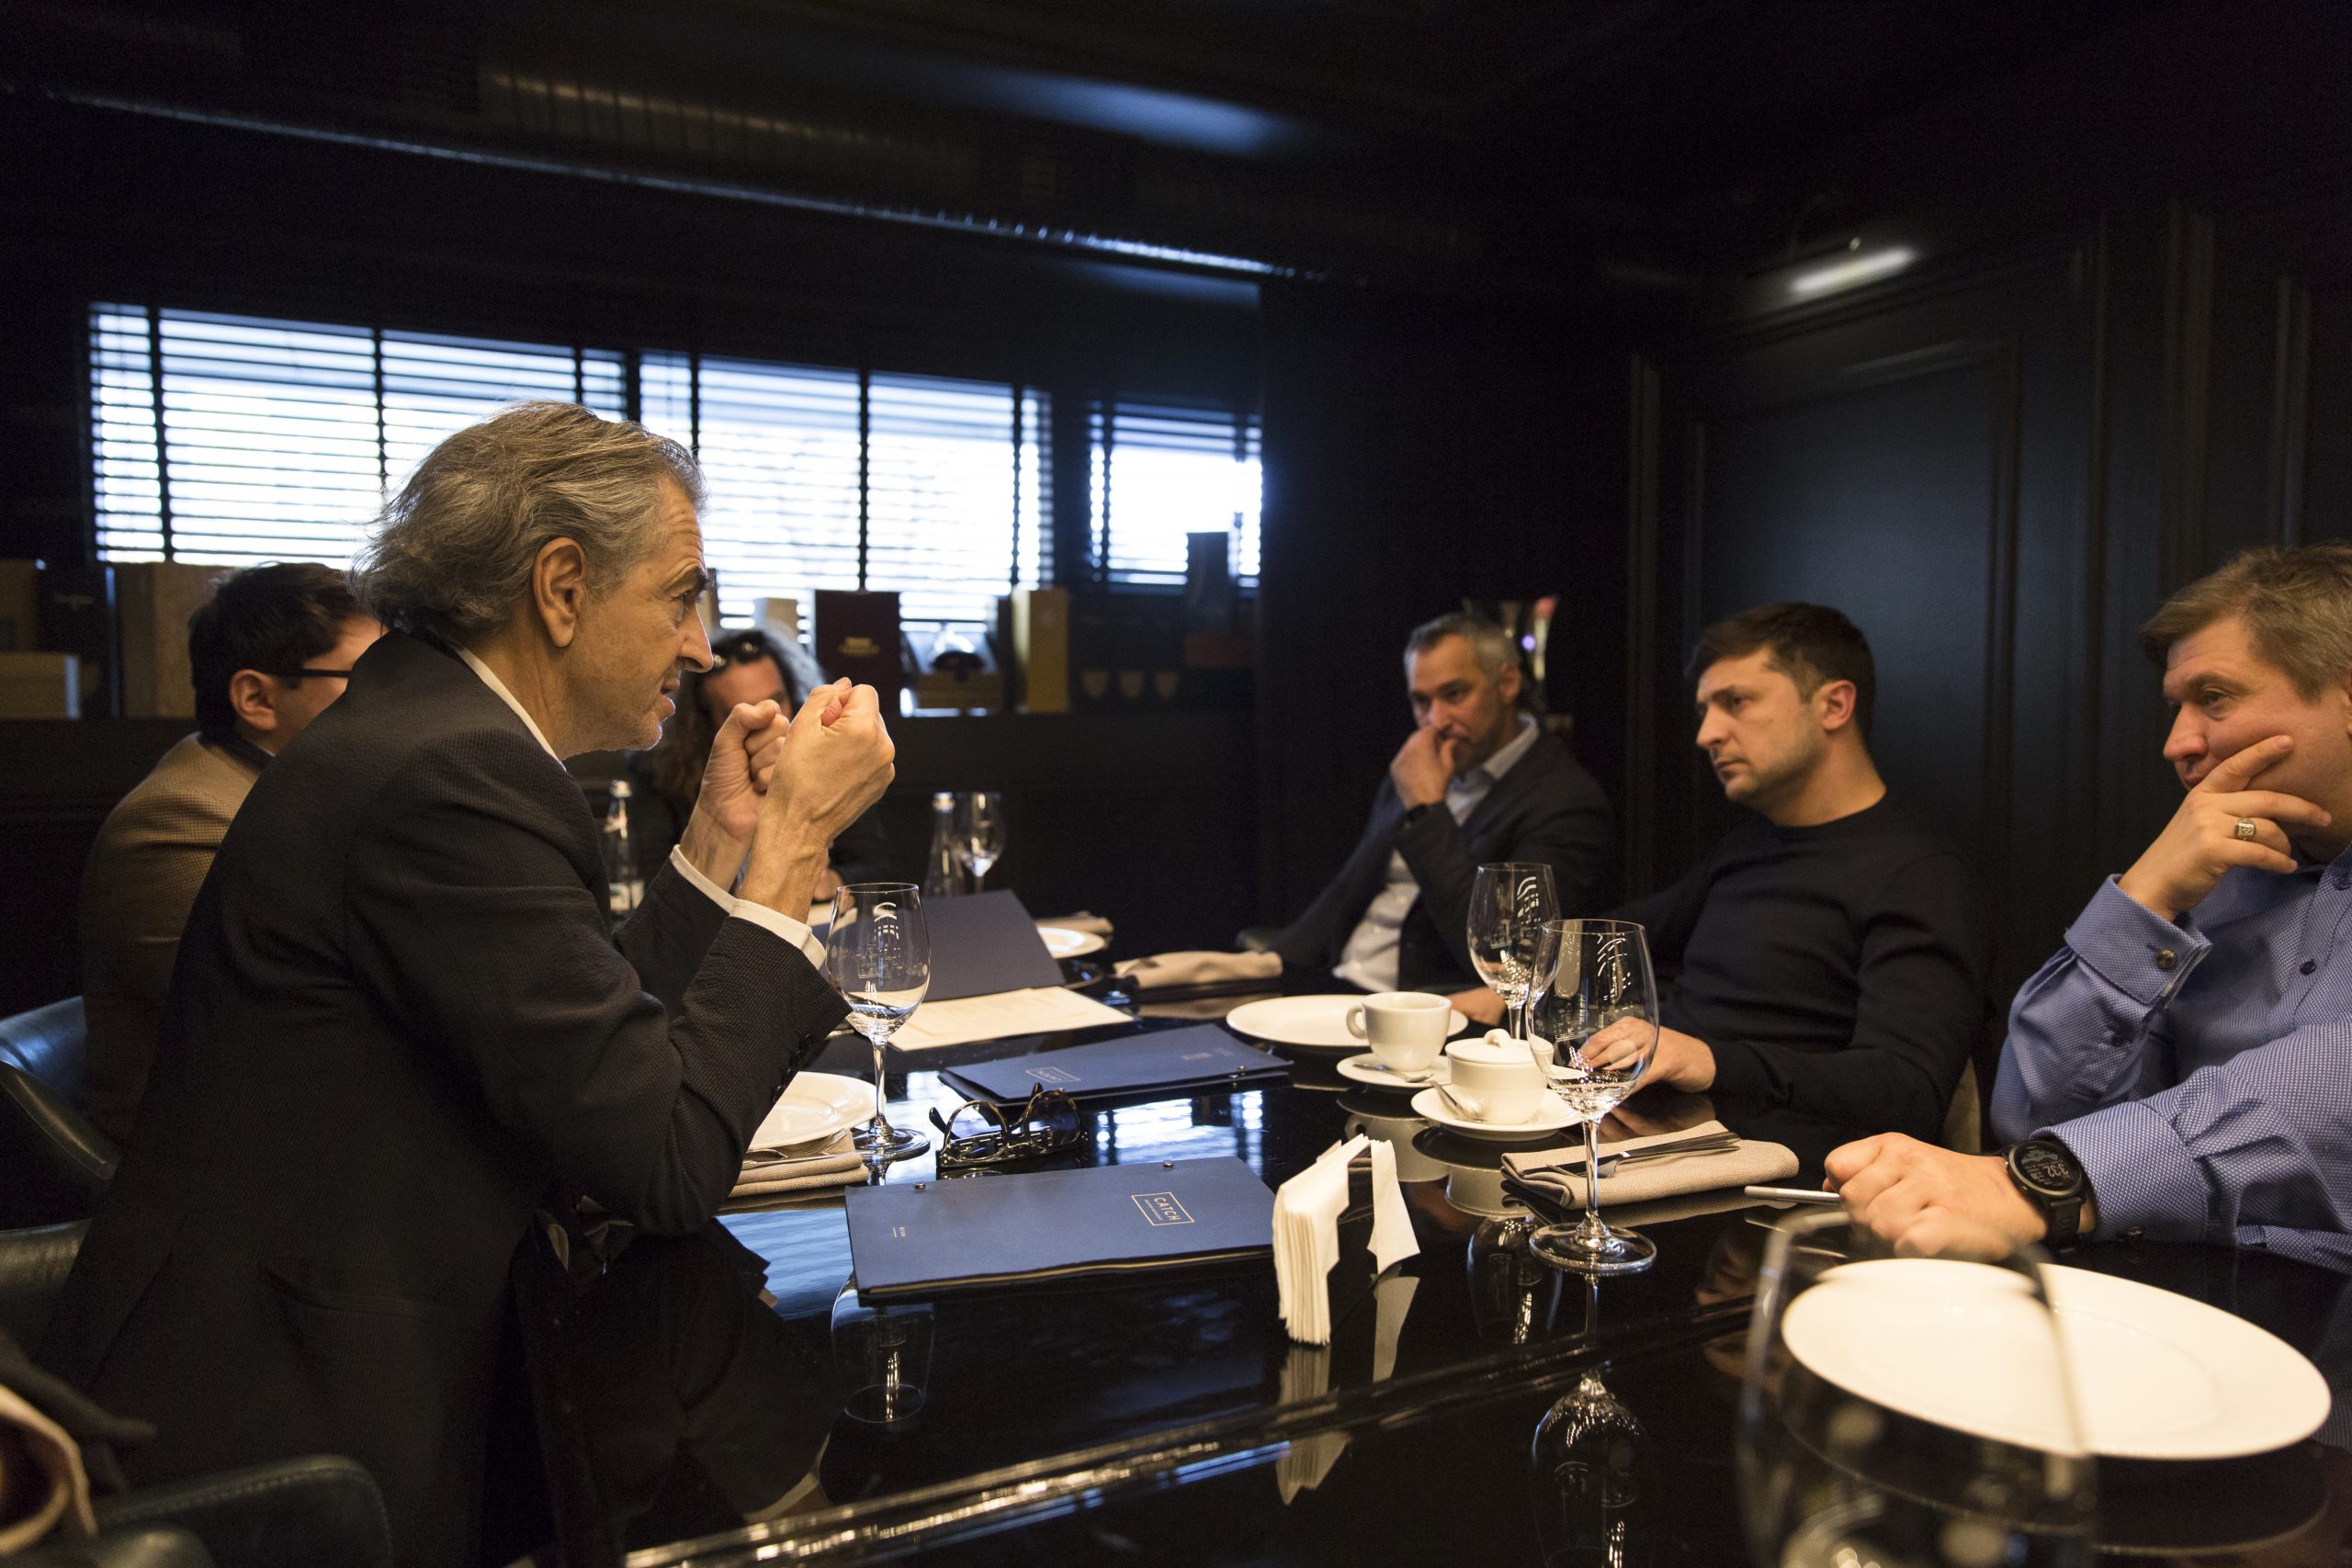 Rencontre entre Bernard-Henri Levy et Volodymyr Zelensky à la table d'un restaurant, avec Camille Lotteau, Vladislav Davidzon.